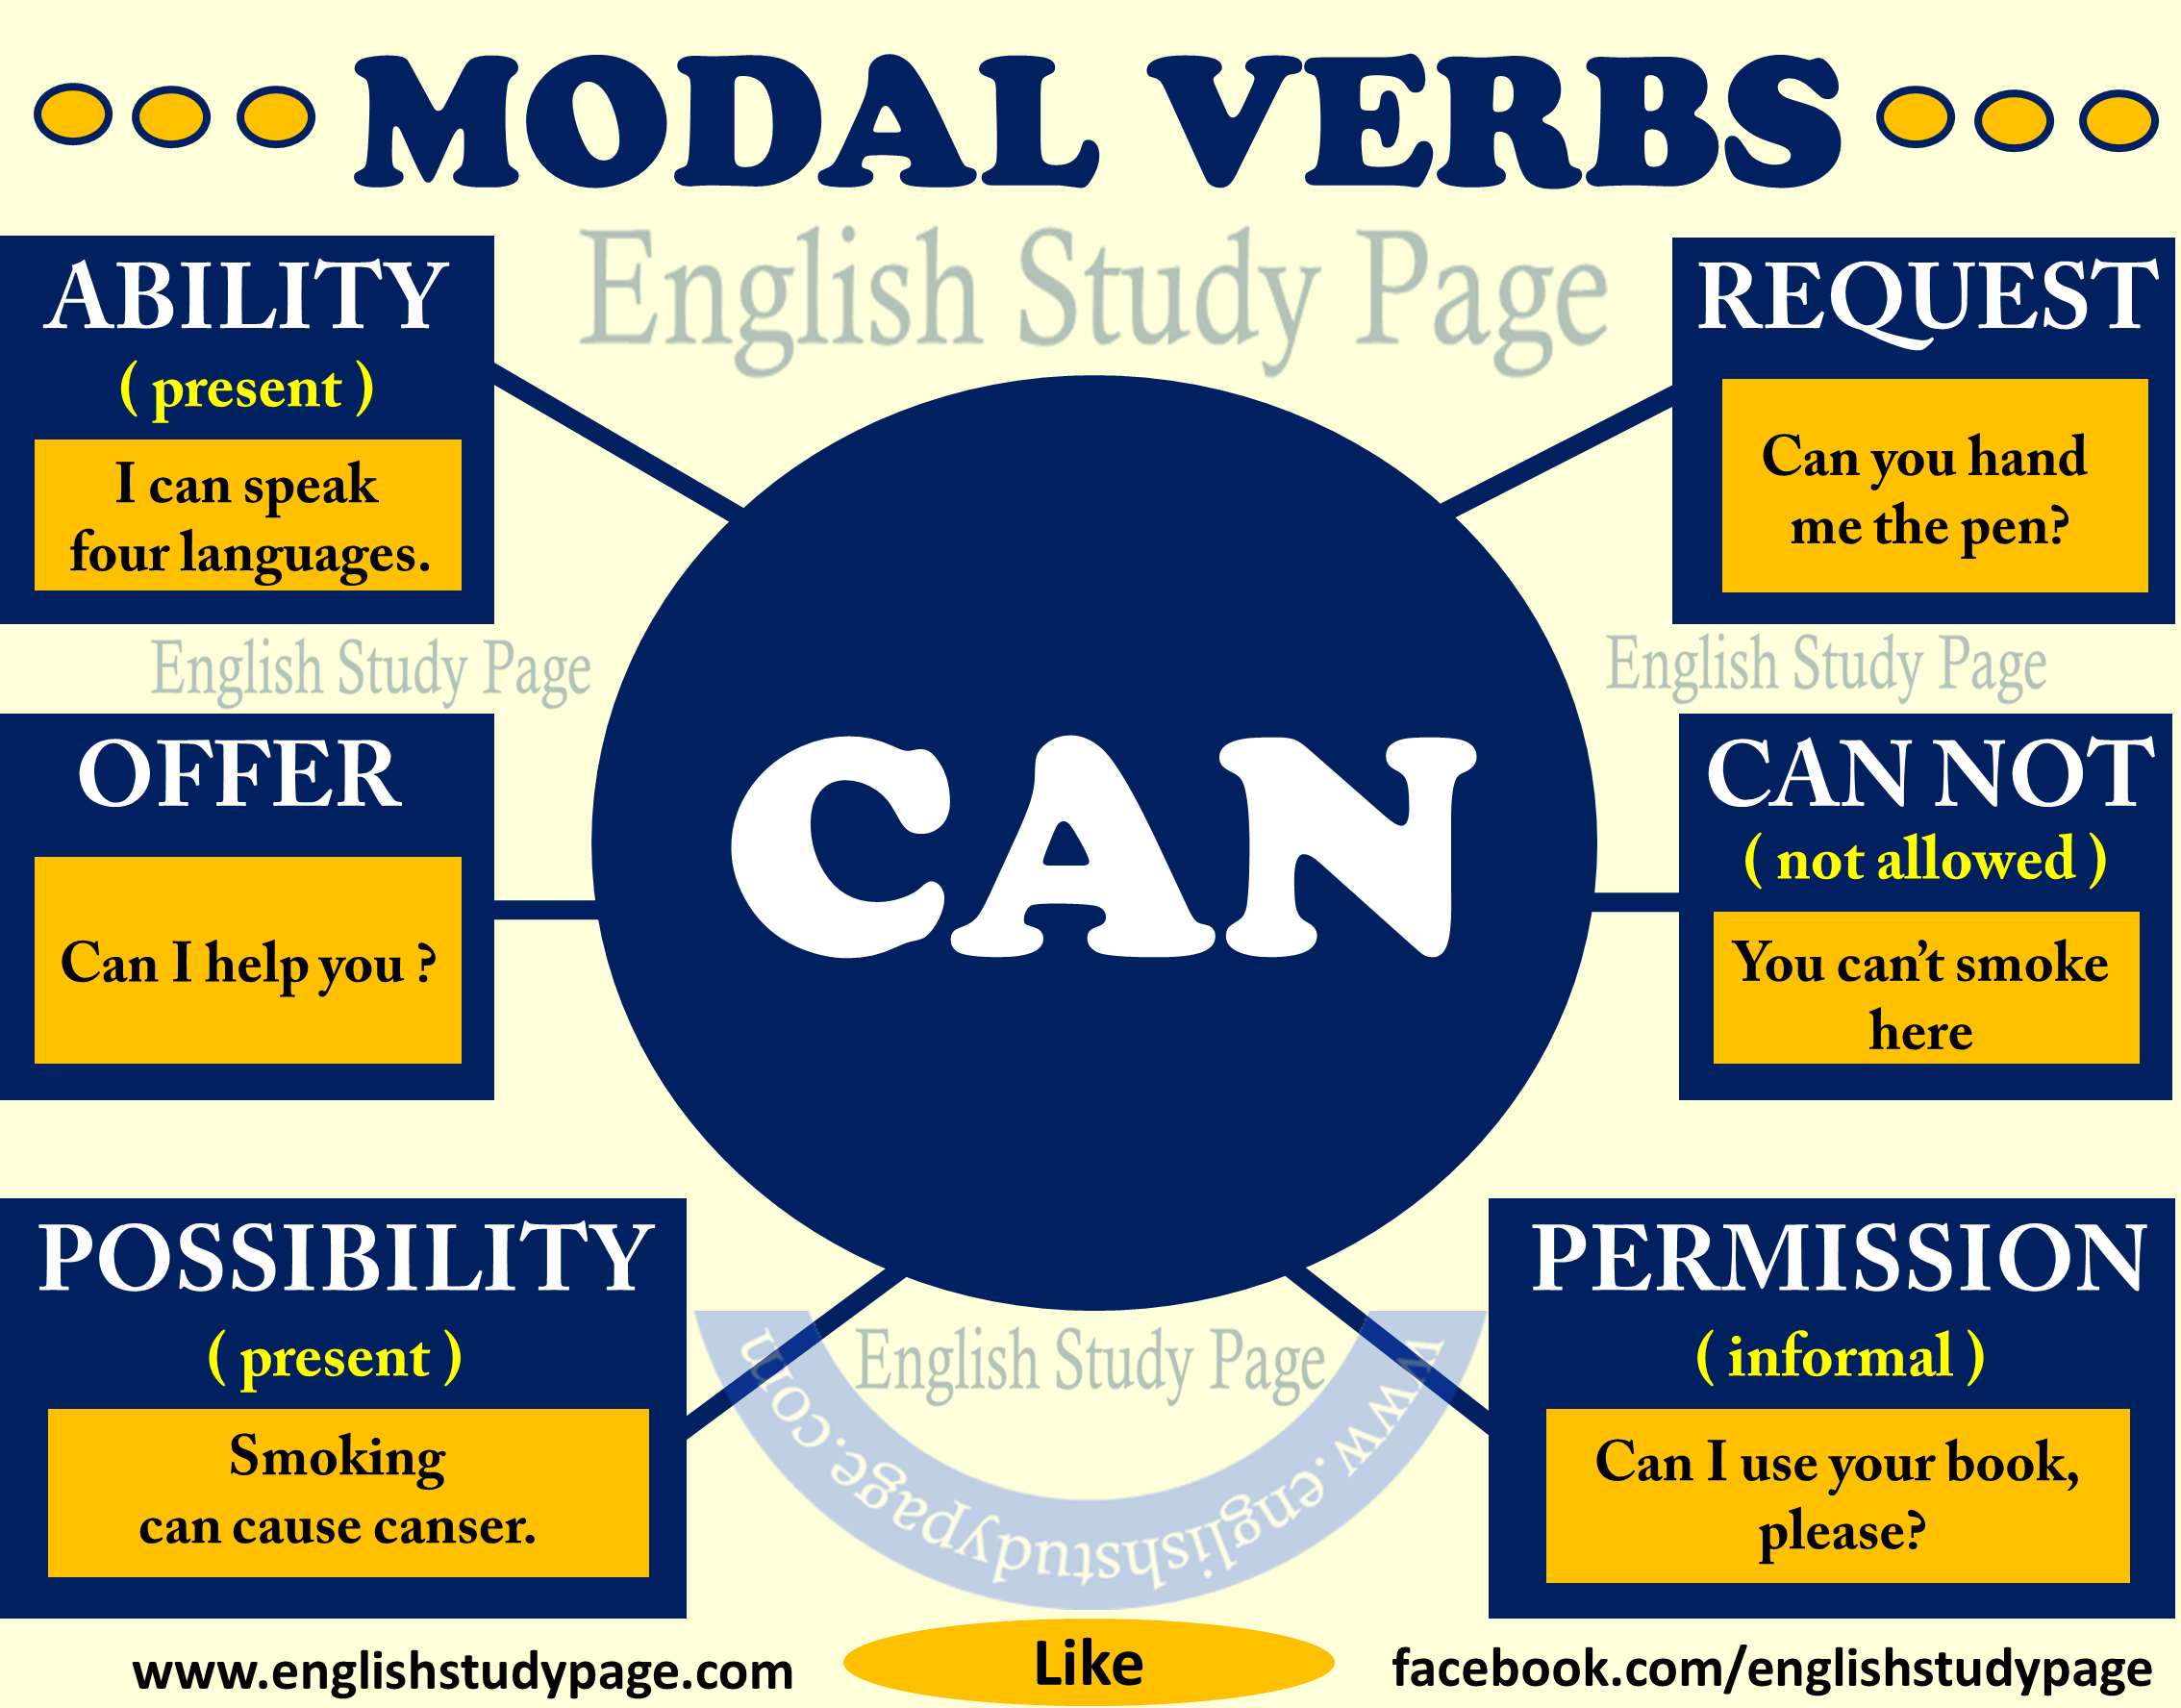 Modal Verbs – “CAN”